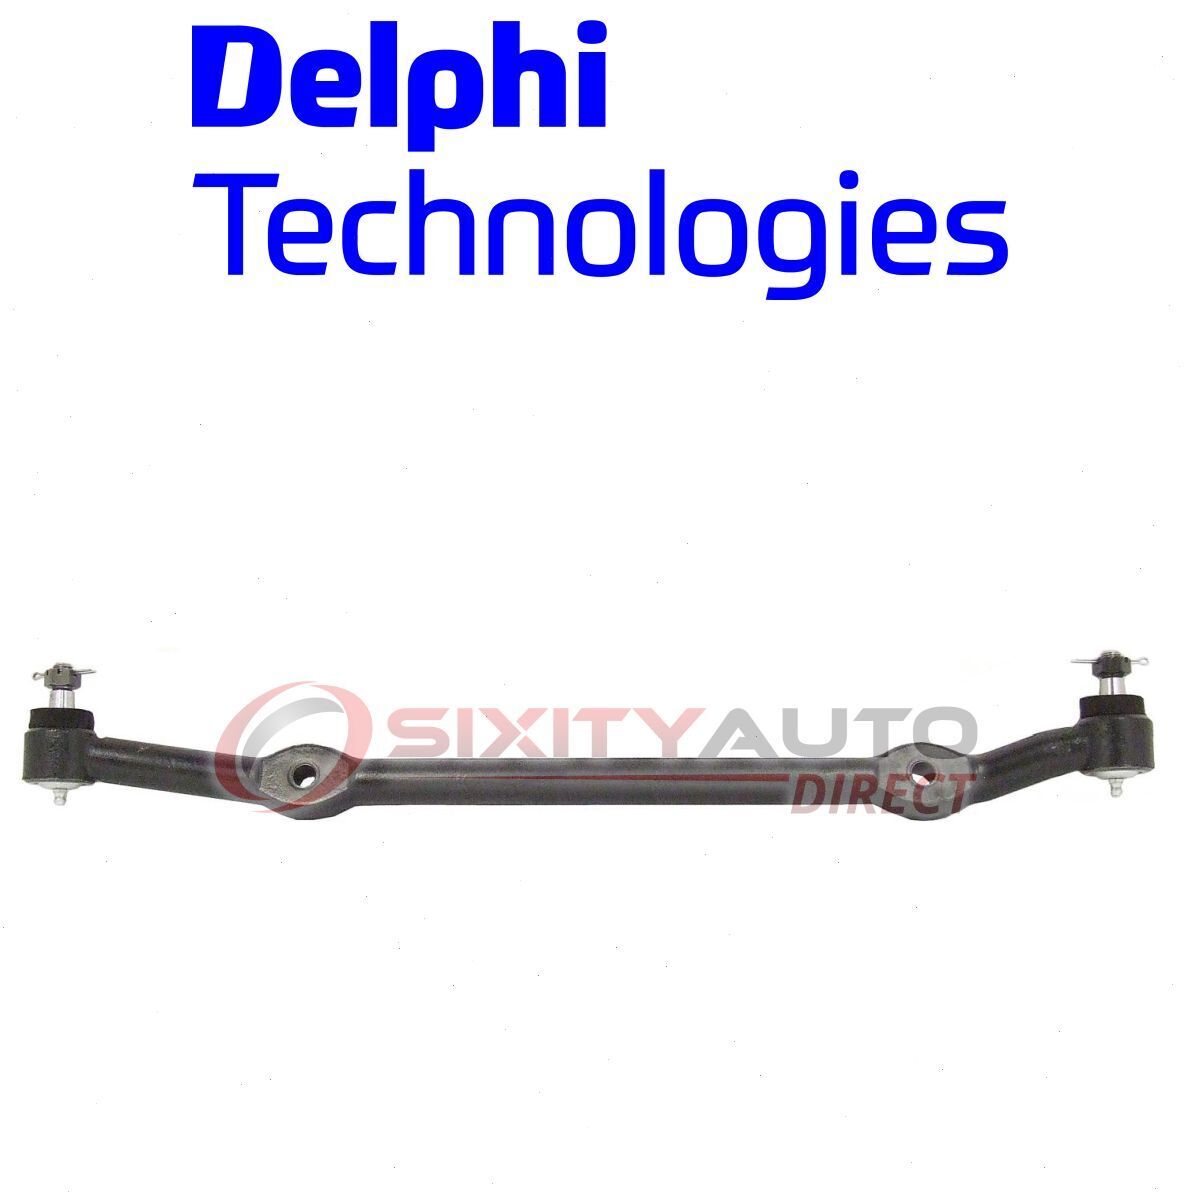 Delphi Steering Center Link for 1978-1987 Oldsmobile Cutlass Salon Wheel qk